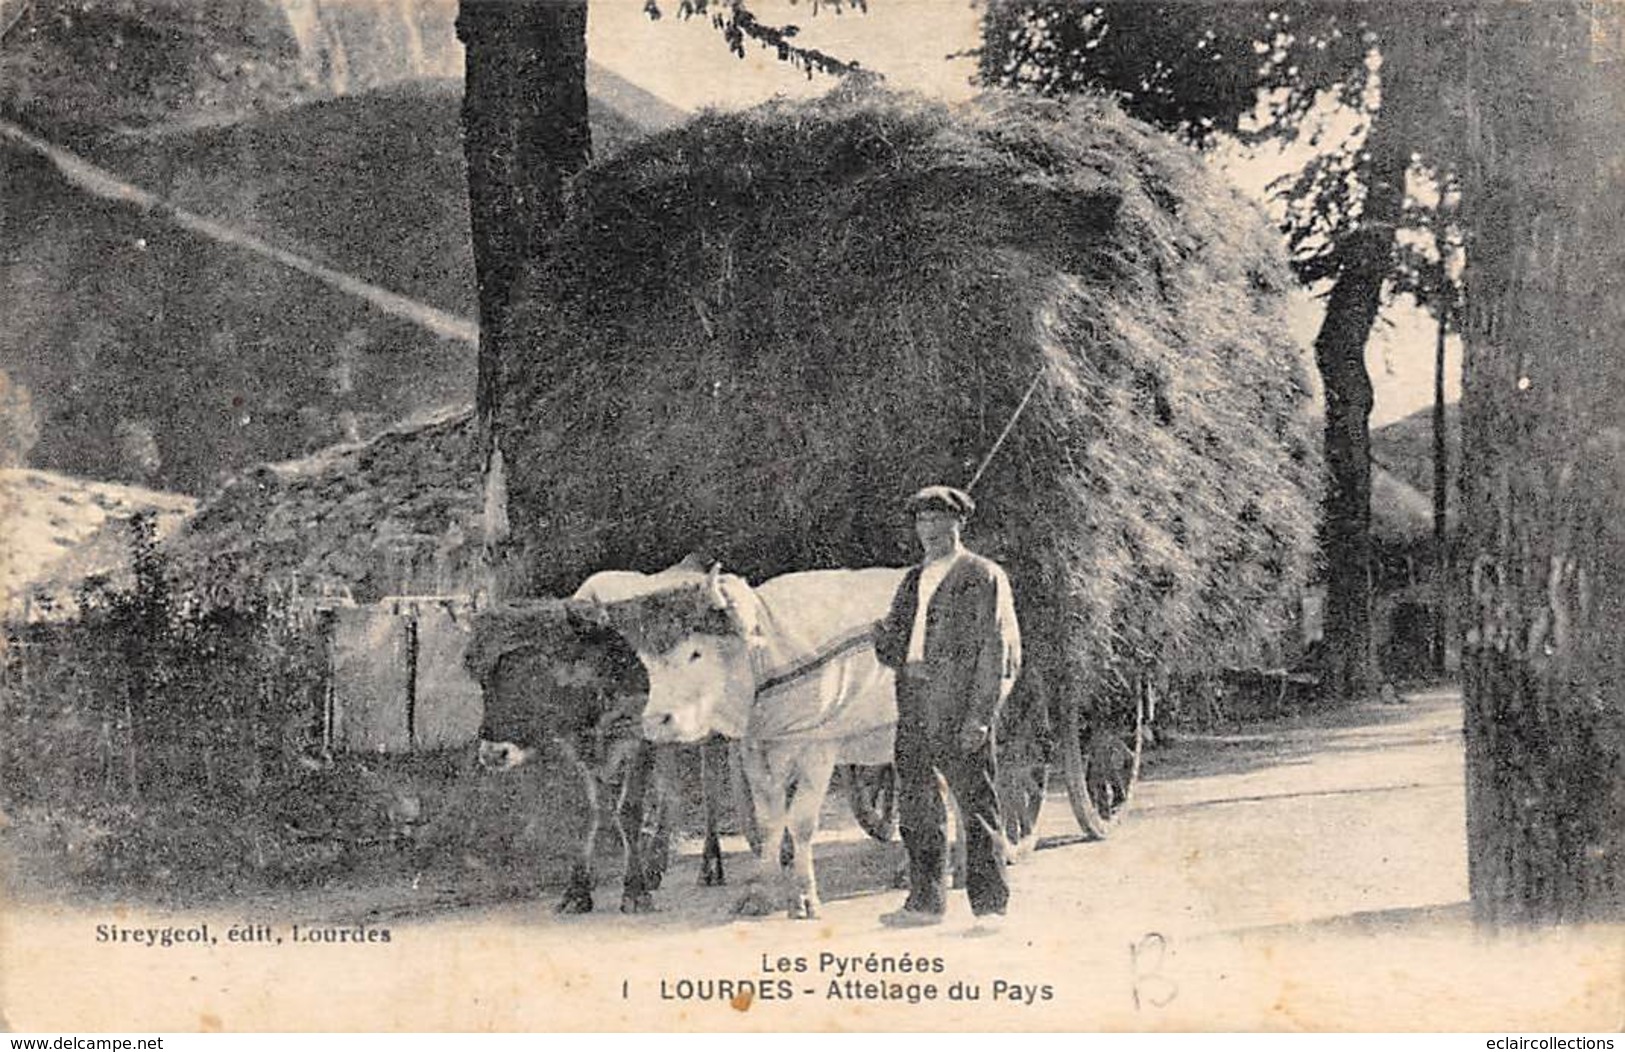 Lourdes        65       Ensemble de 6 cartes:    Vie agricole, vie aux champs;Attelage.     (voir scan)